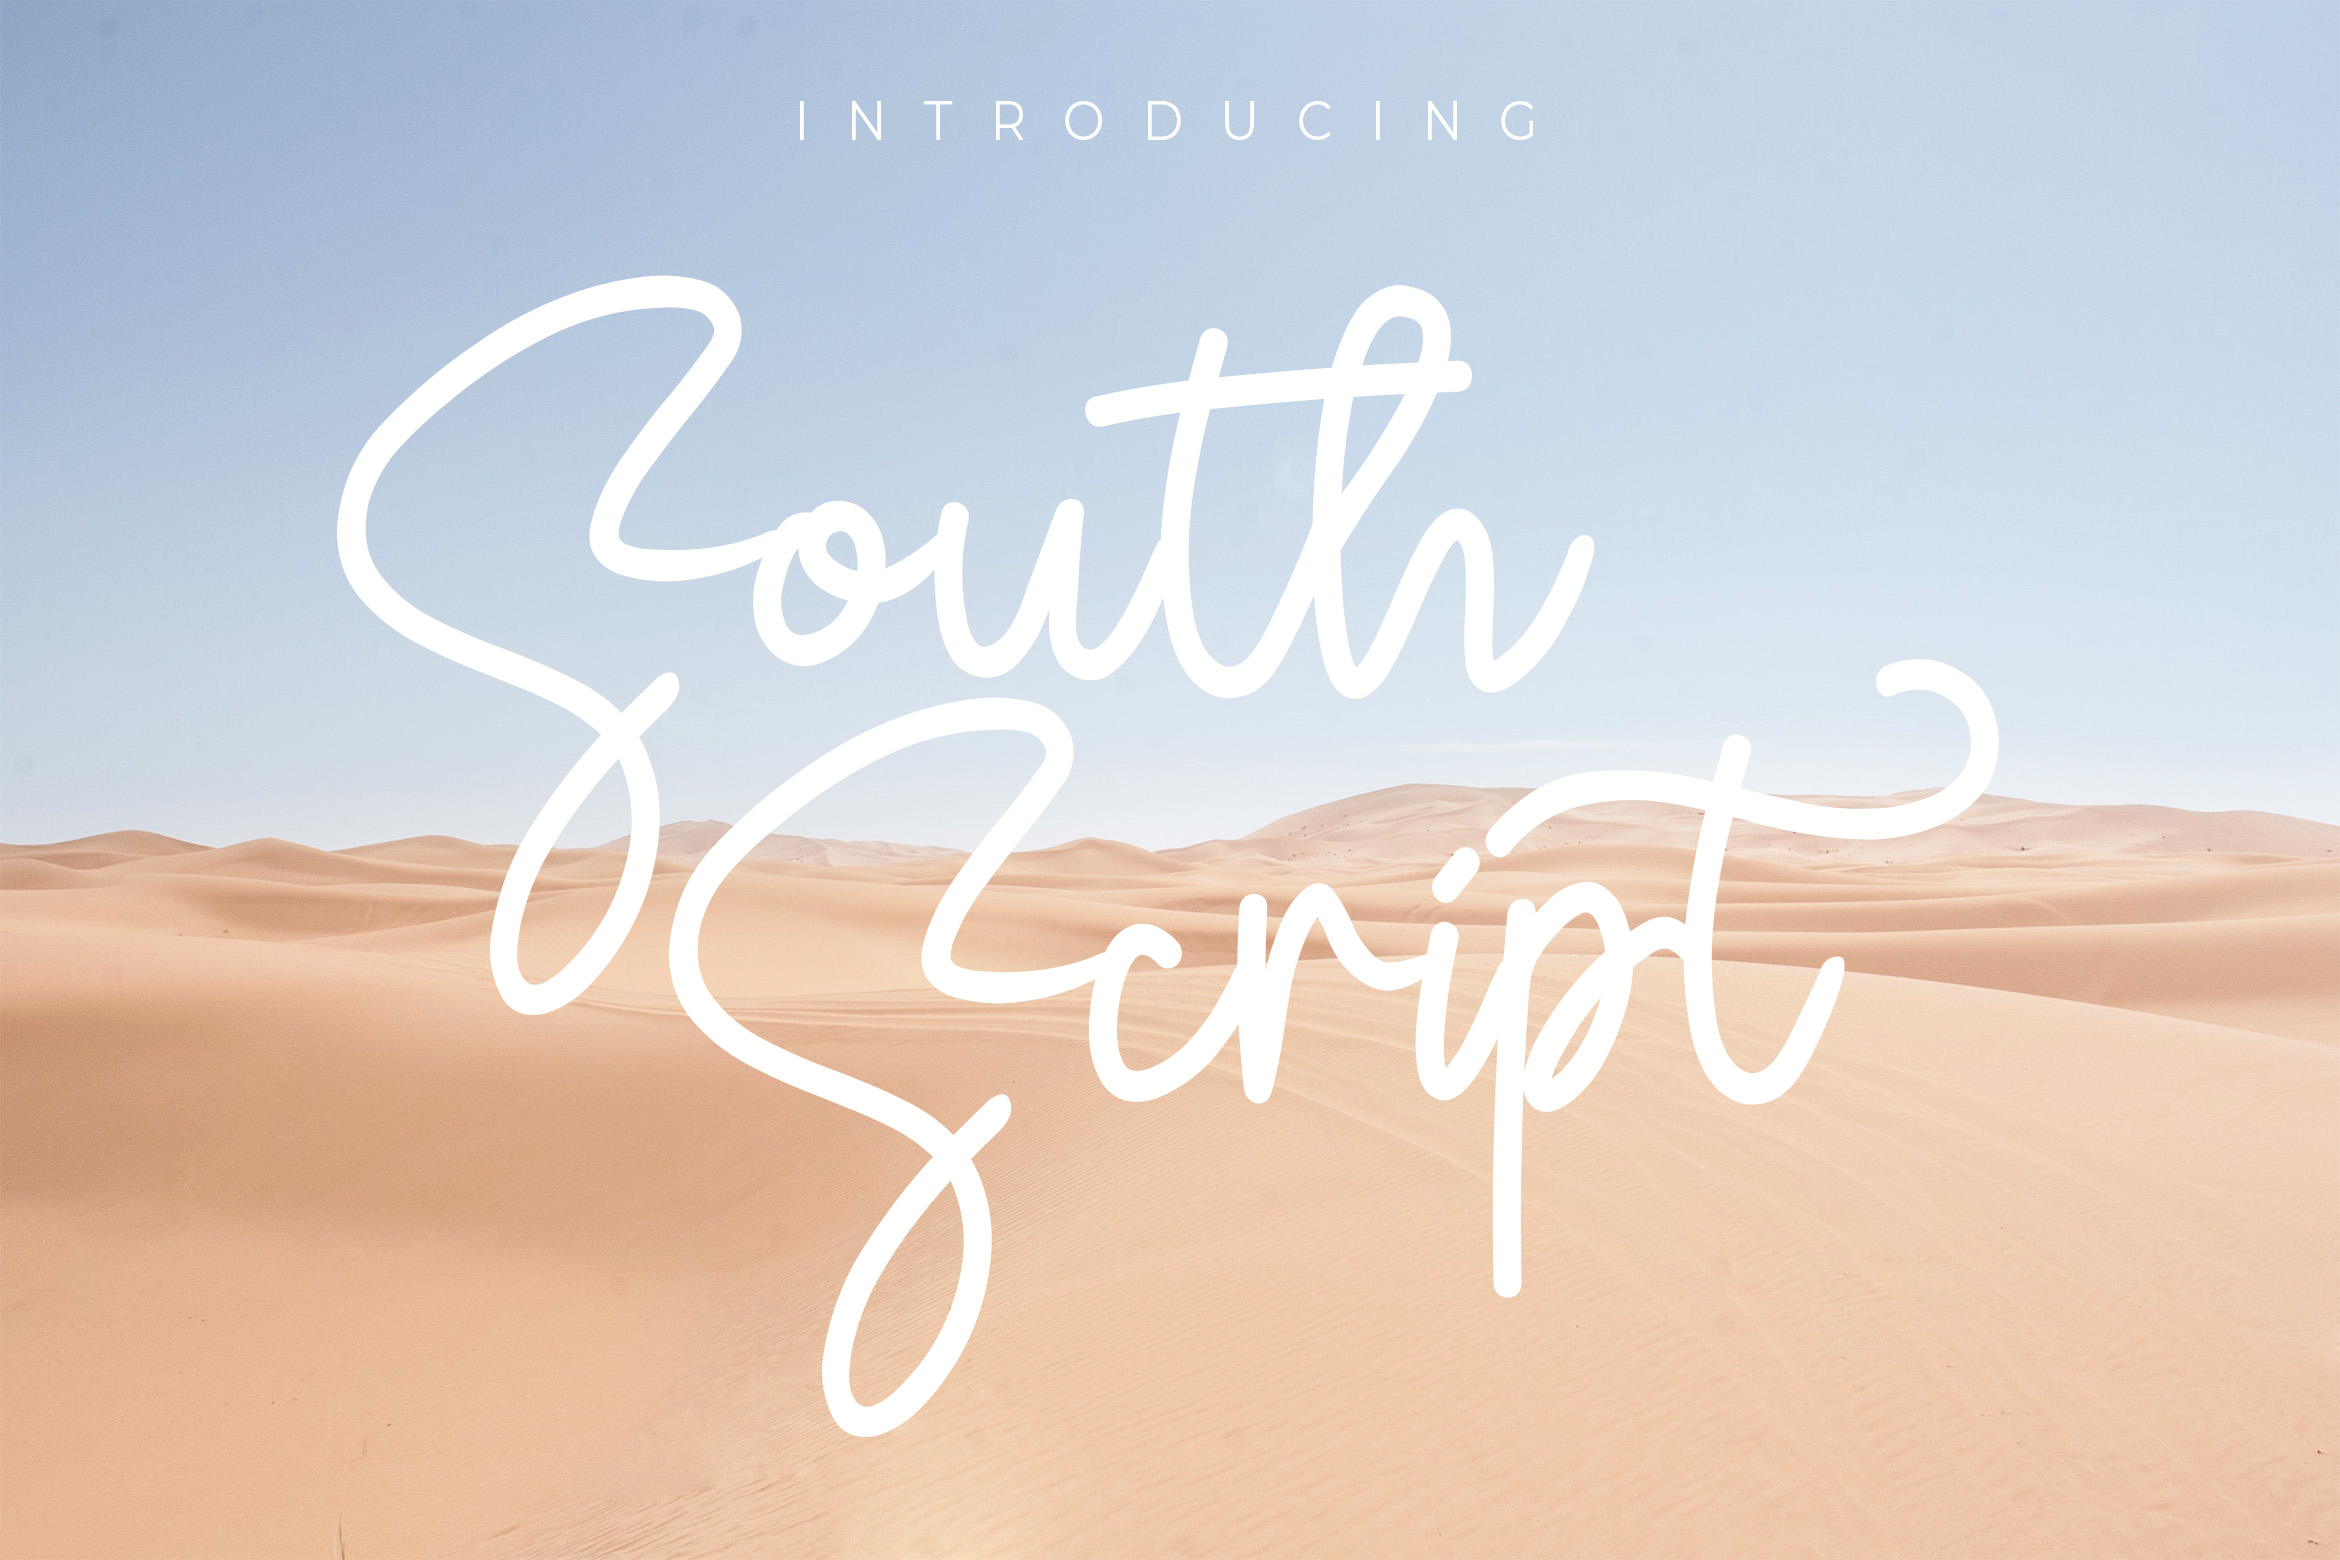 South Script